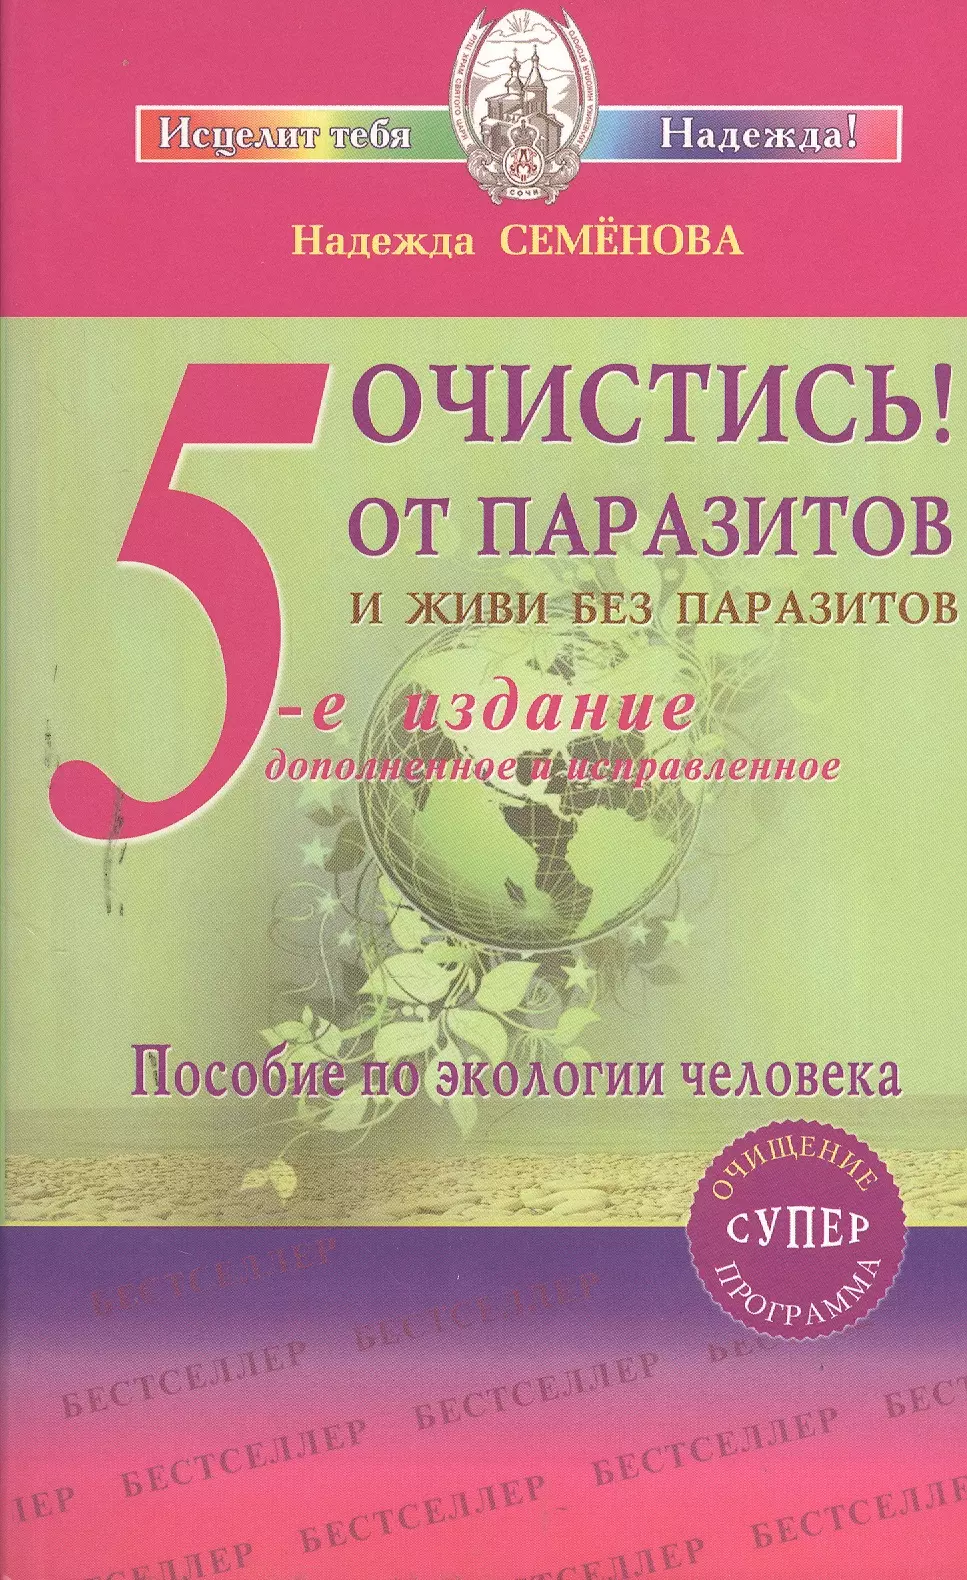 Семенова Надежда Алексеевна - Очистись!  (6-е изд) от паразитов и живи без паразитов